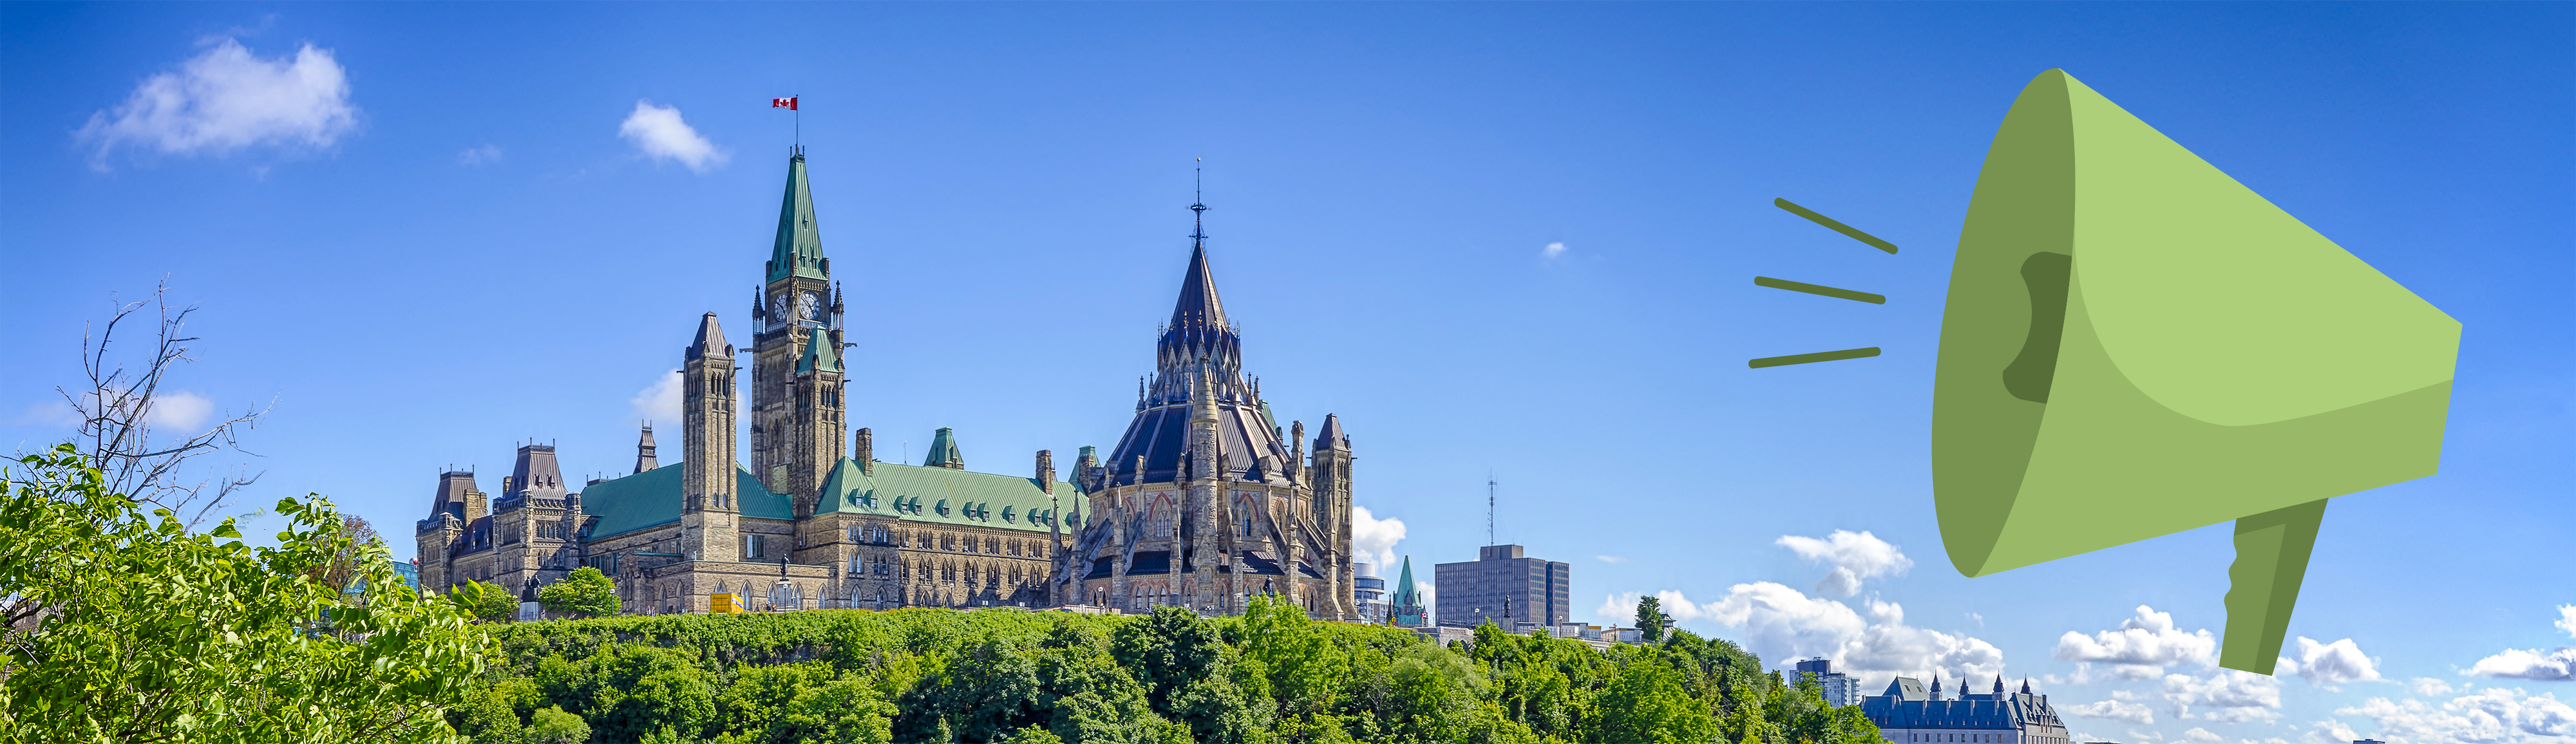 Parliament Hill Ottawa